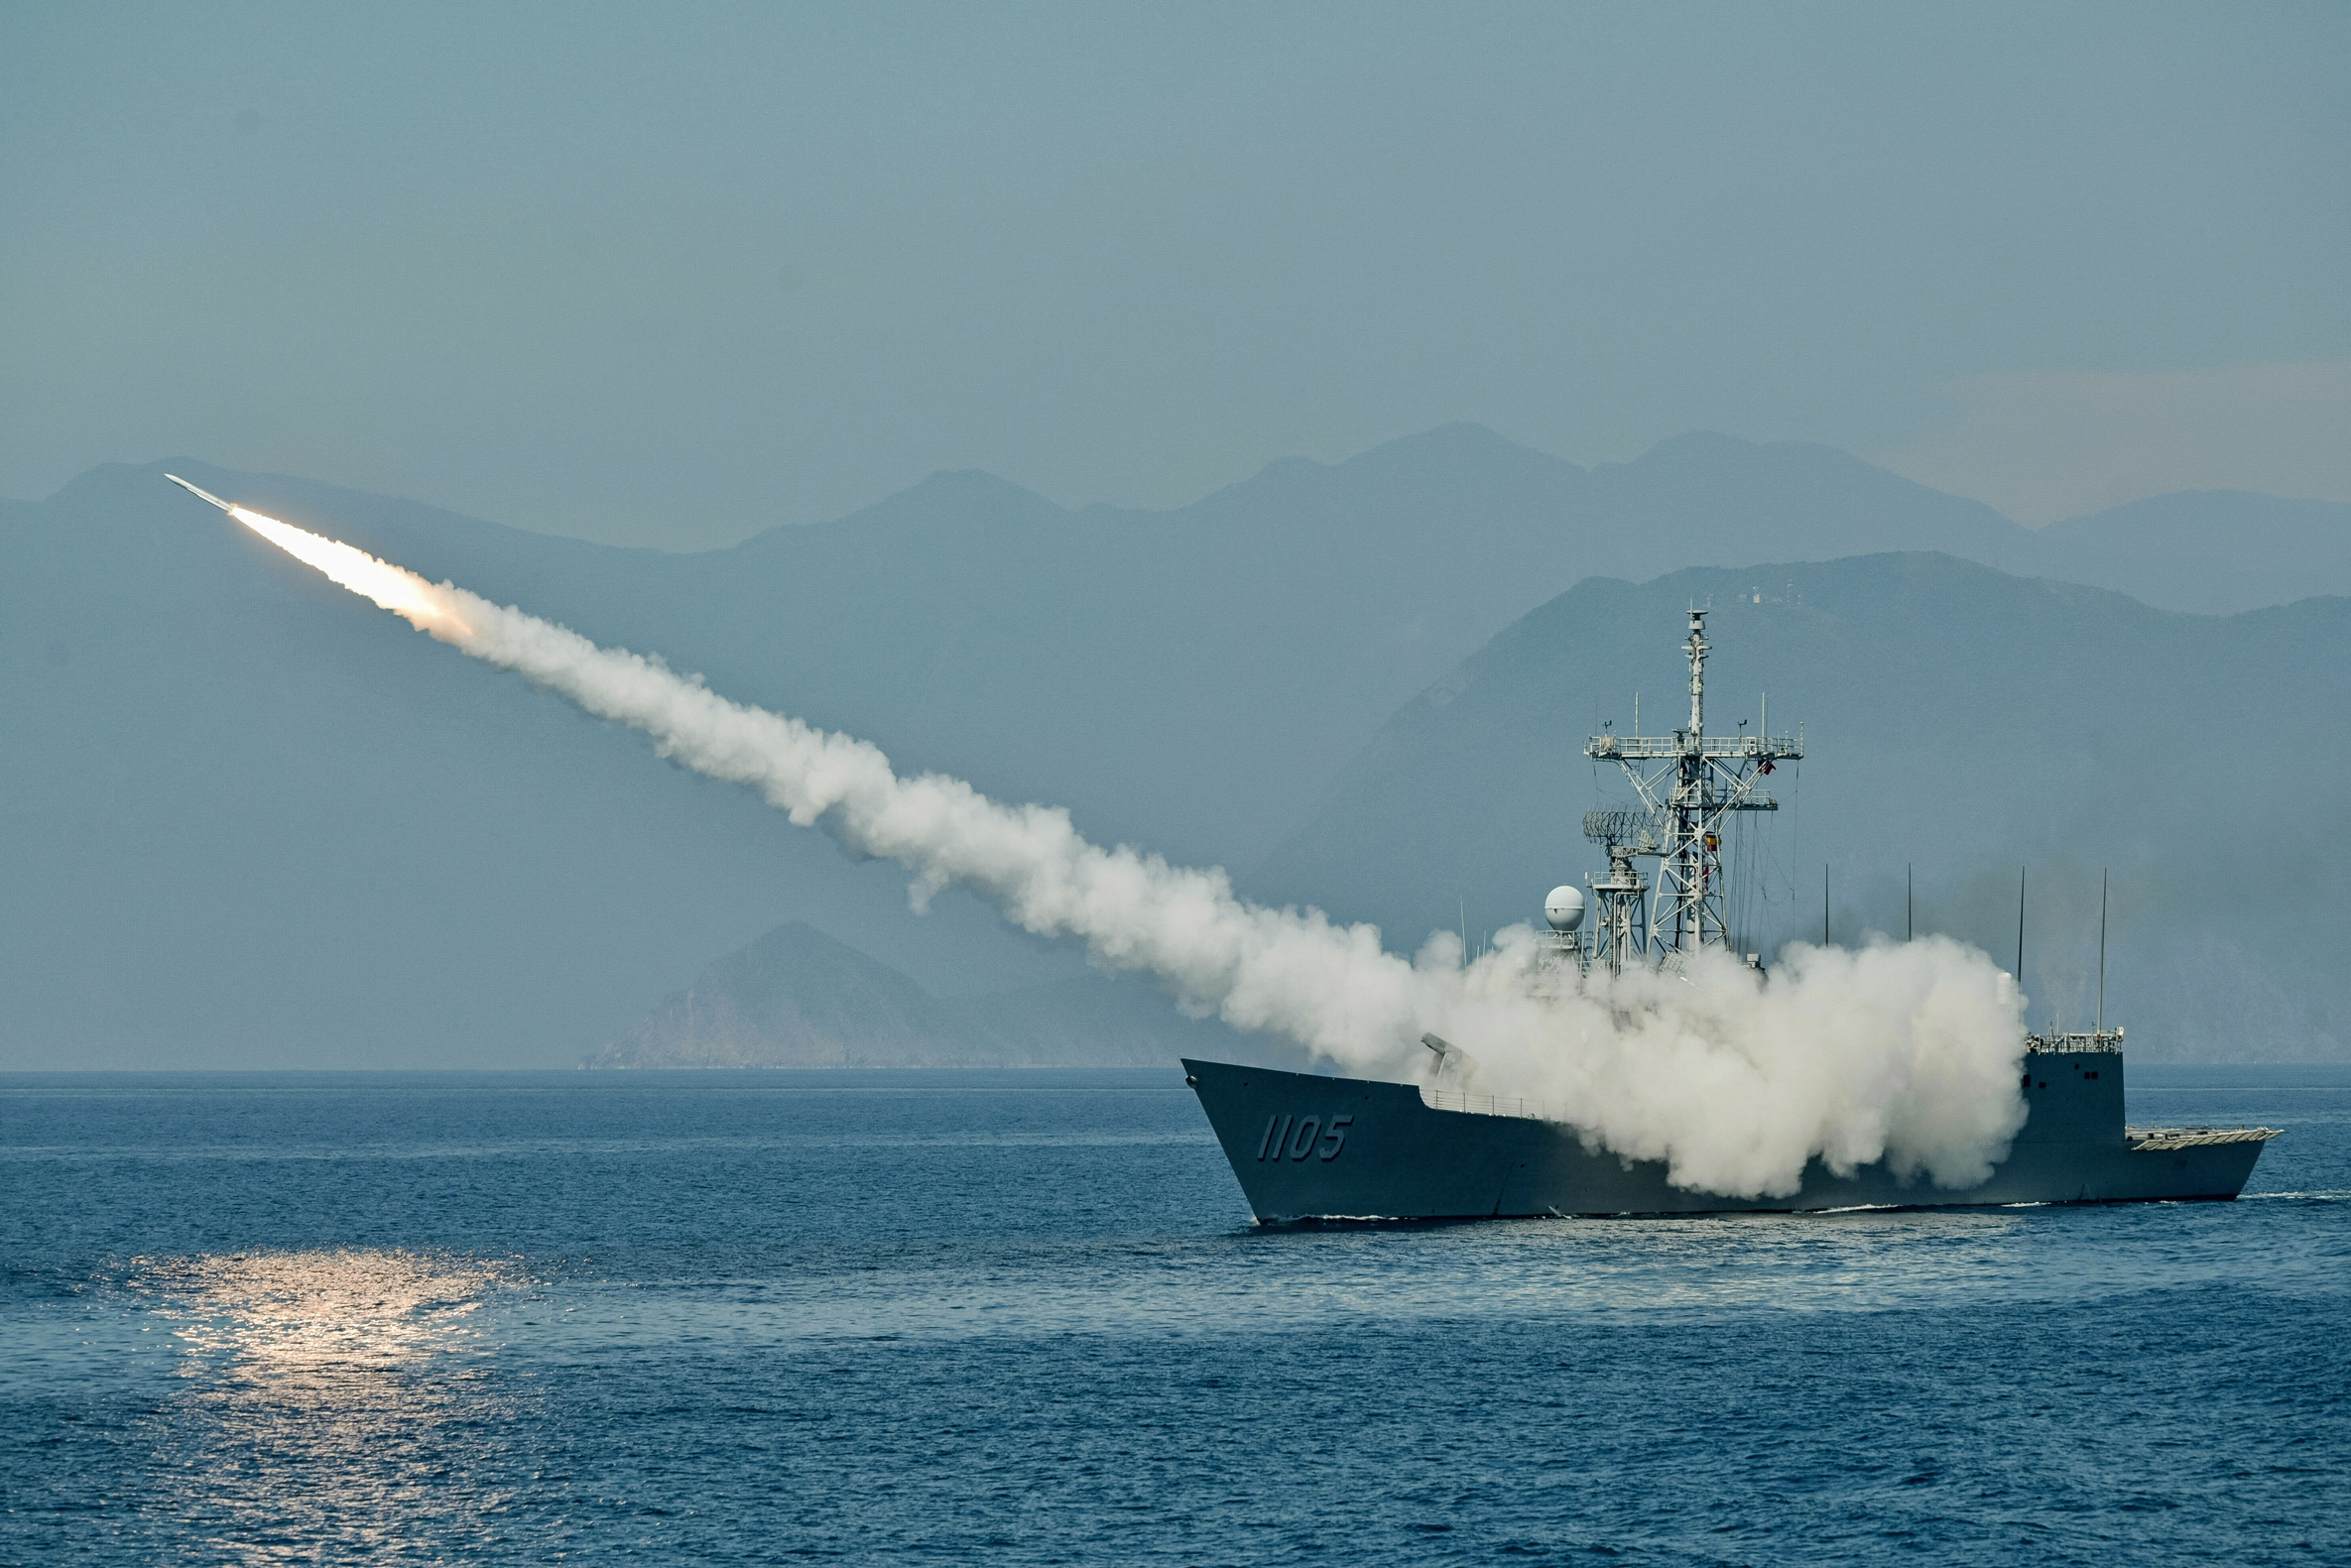 Hải quân Đài Loan phóng phi đạn Standard do Hoa Kỳ sản xuất từ tàu khu trục nhỏ trong cuộc tập trận thường niên trên biển gần cảng hải quân Suao, ở Đài Loan, vào ngày 26/07/2022. (Ảnh: Sam Yeh/AFP qua Getty Images)